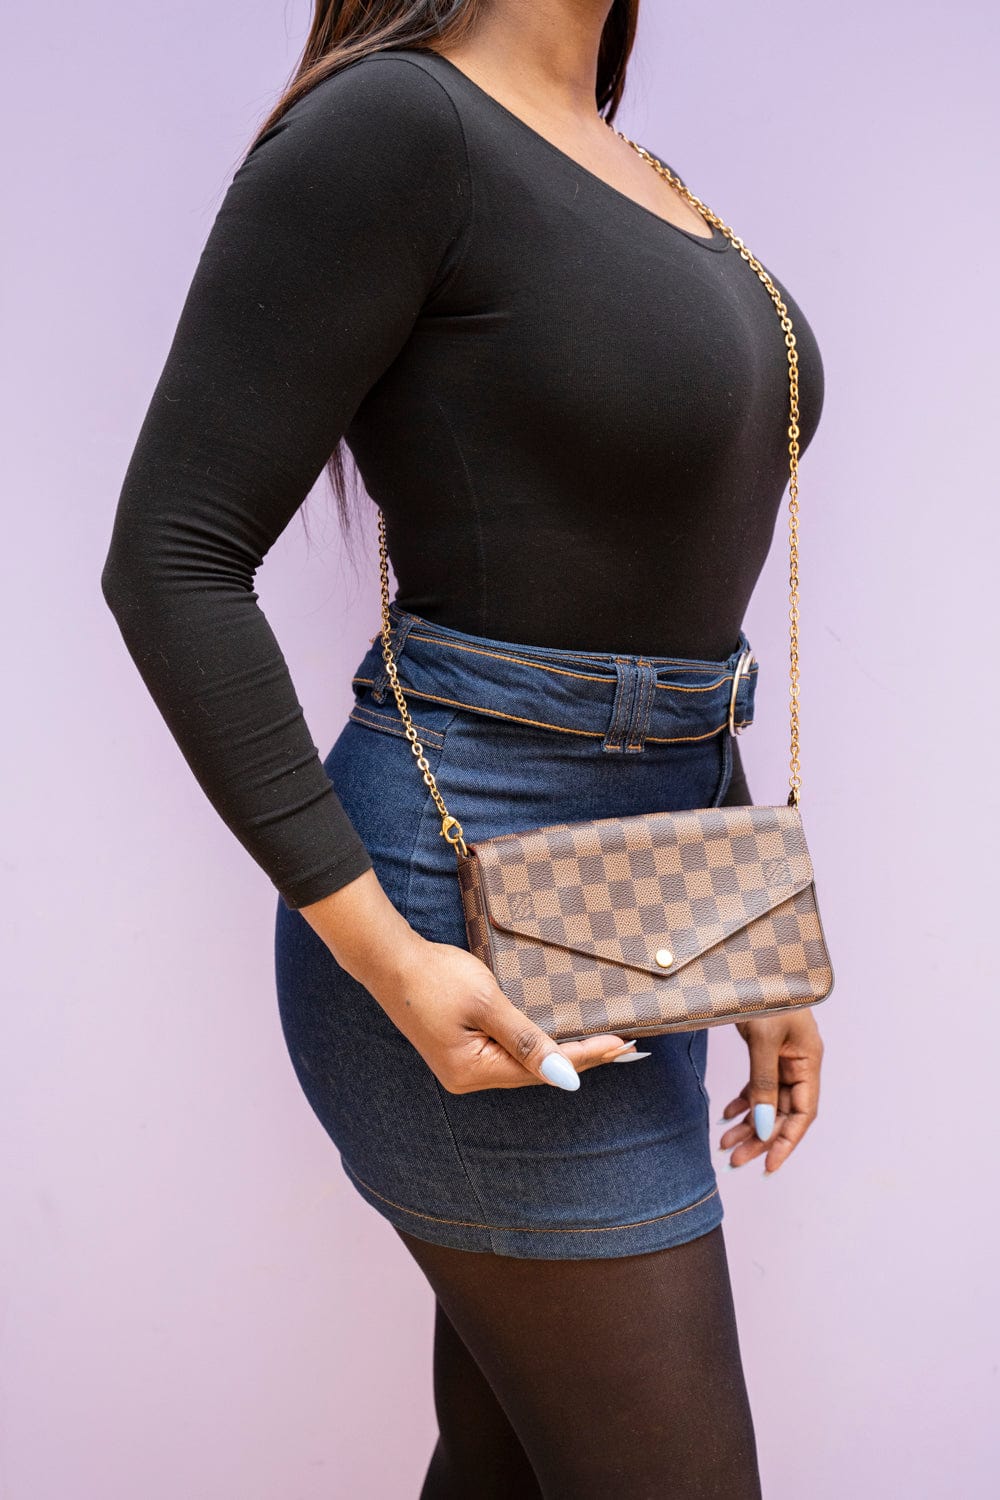 Felicie Pochette shoulder bag (Louis Vuitton)